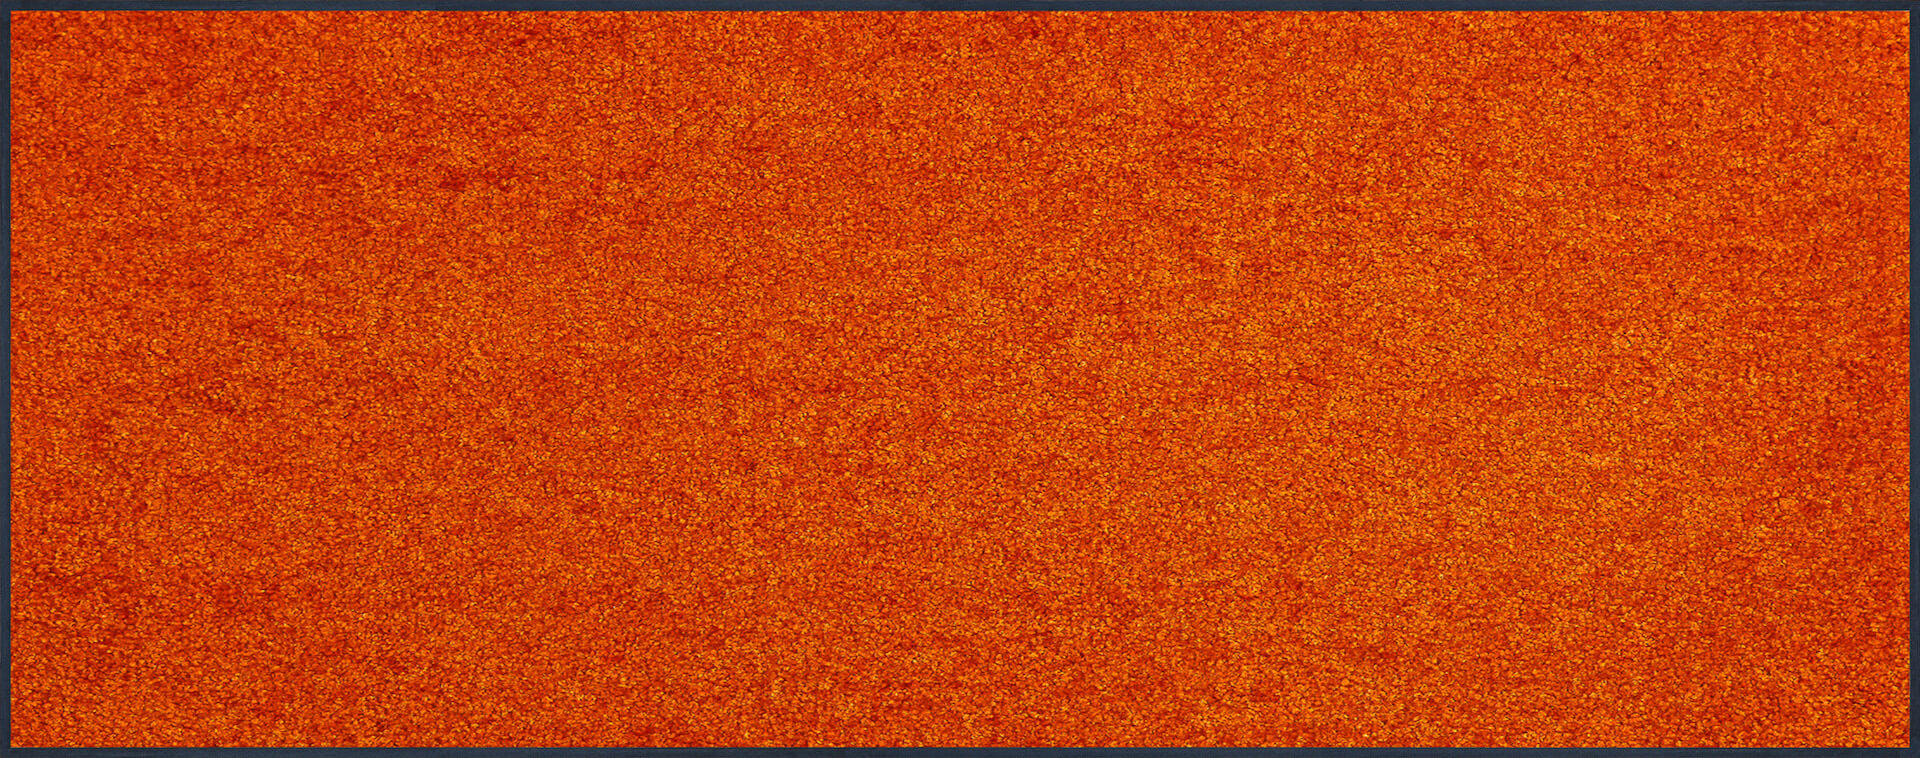 Fußmatte nach Maß Trend Colour Burnt Orange, Wash & Dry Qualität, Draufsicht